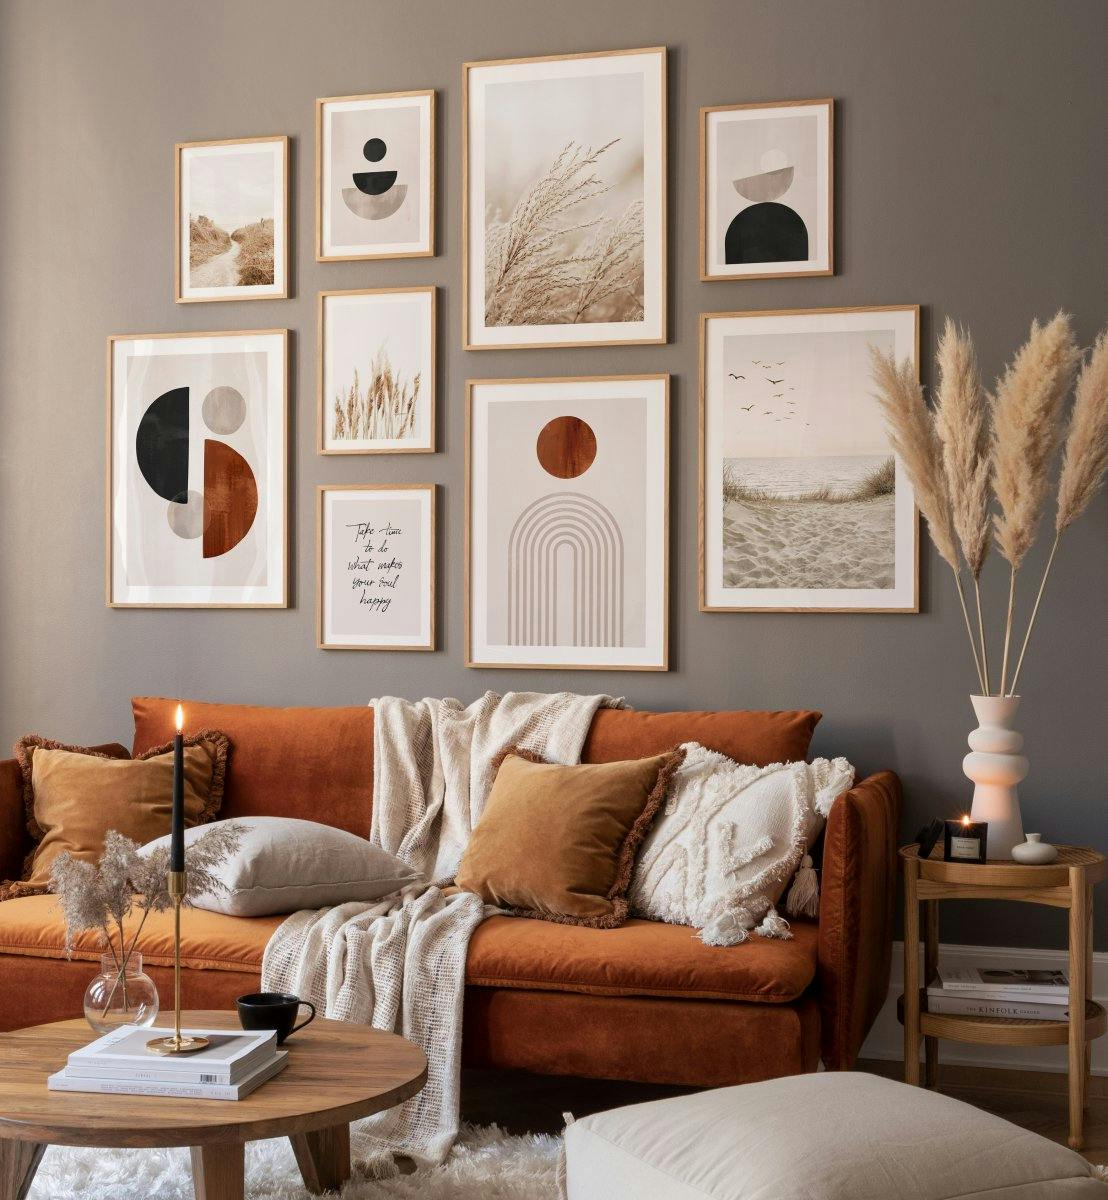 Illustrazioni grafiche abbinate a stampe natura e citazioni per il soggiorno